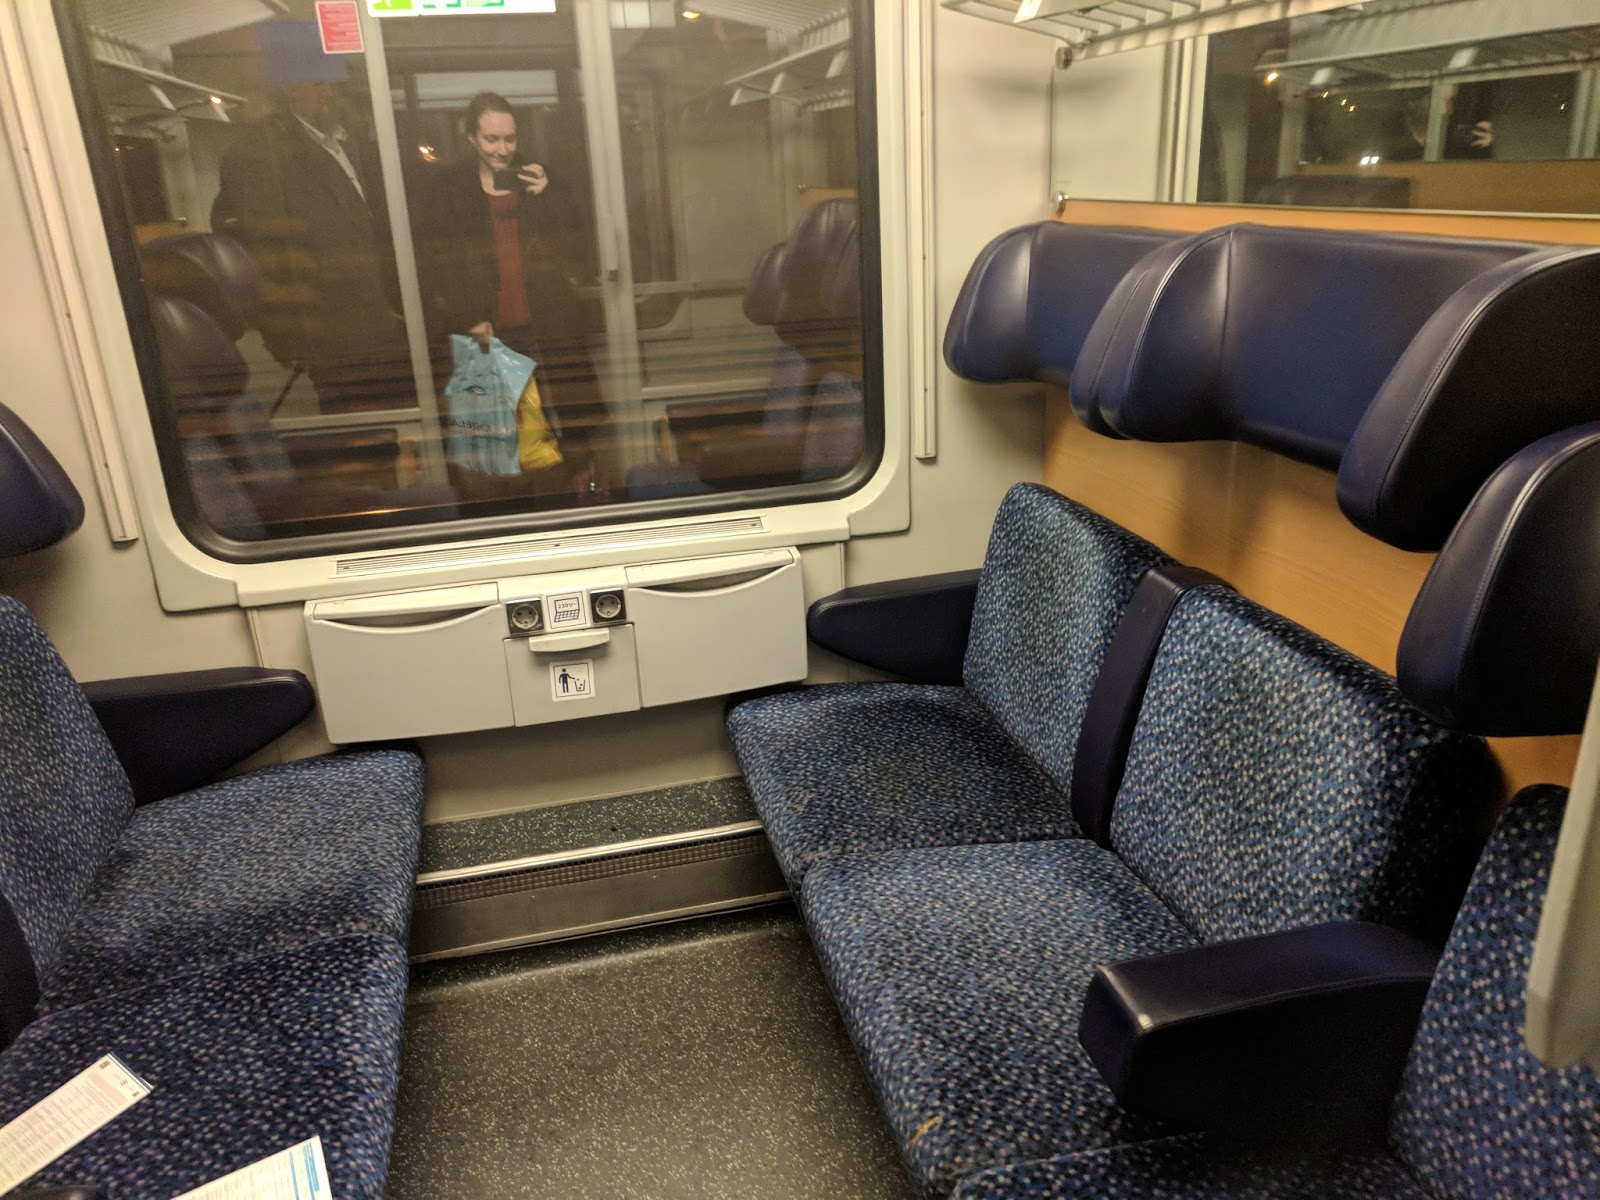 поезд 119 саранск москва сидячие места